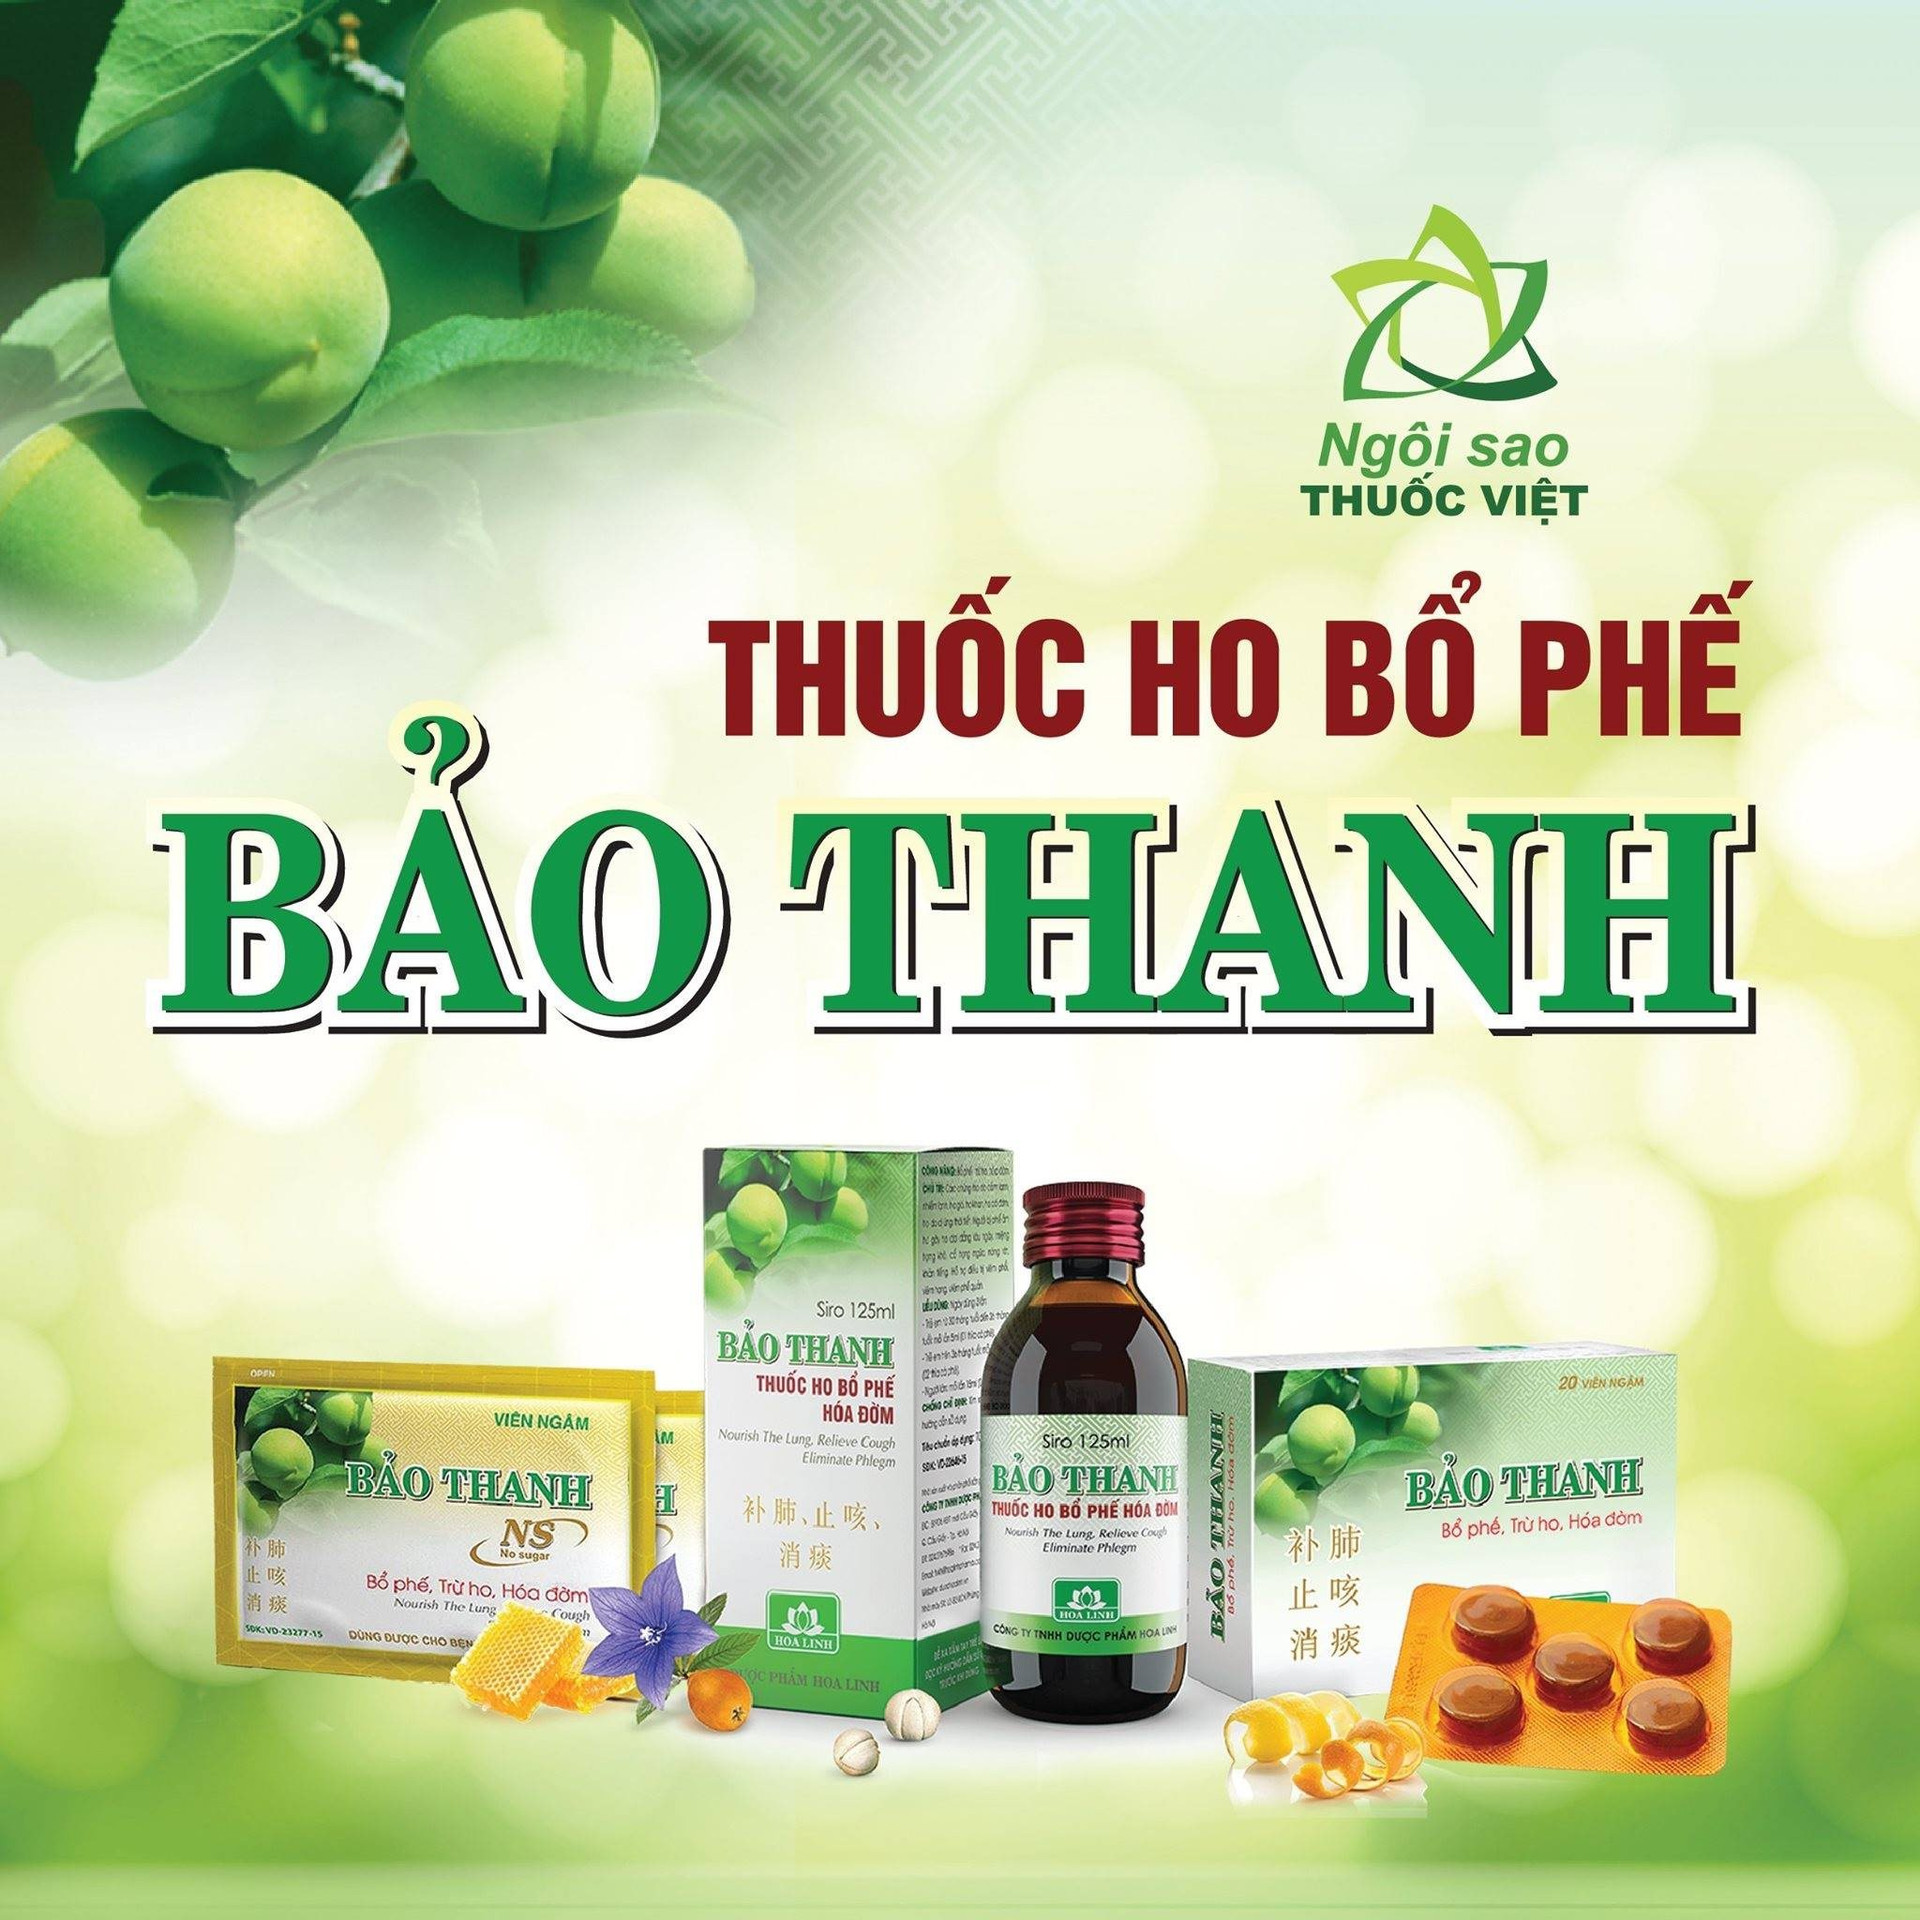 Các sản phẩm mang thương hiệu thuốc ho bổ phế Bảo Thanh đã được Bộ y tế trao tặng giải thưởng Ngôi sao thuốc Việt, nhằm tôn vinh thuốc sản xuất trong nước có chất lượng tốt.